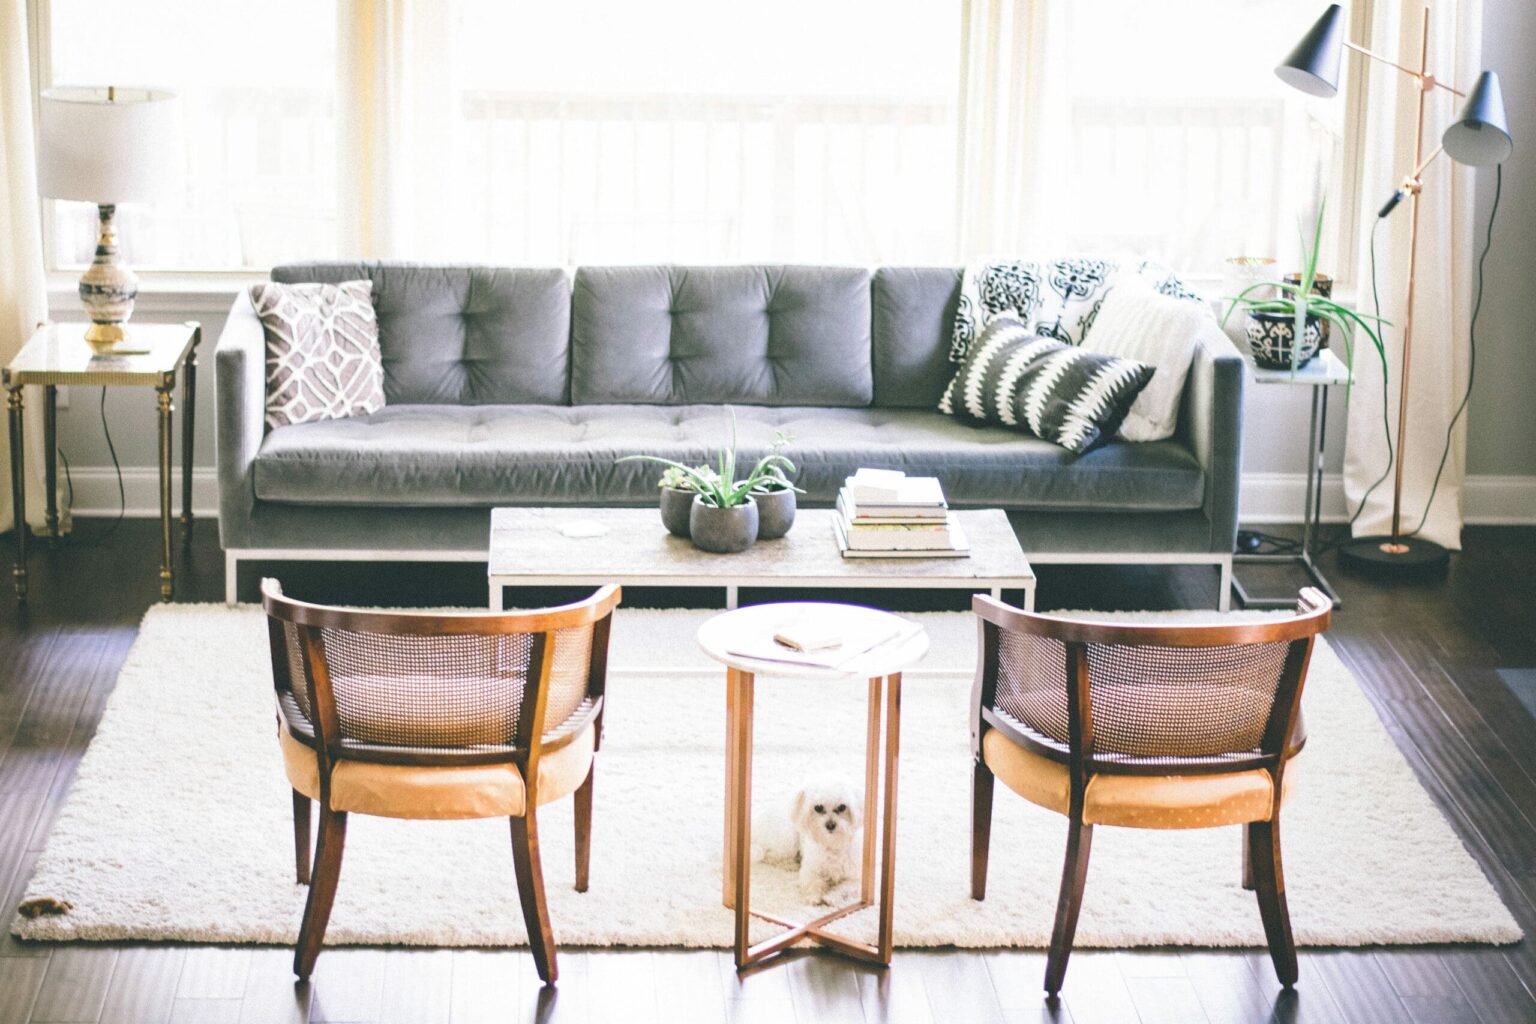 Sala de estar, com duas cadeiras, poodle no tapete branco e sofá cinza. Ilustração do texto sobre limpar sofá no Ct São Bento do Sul.